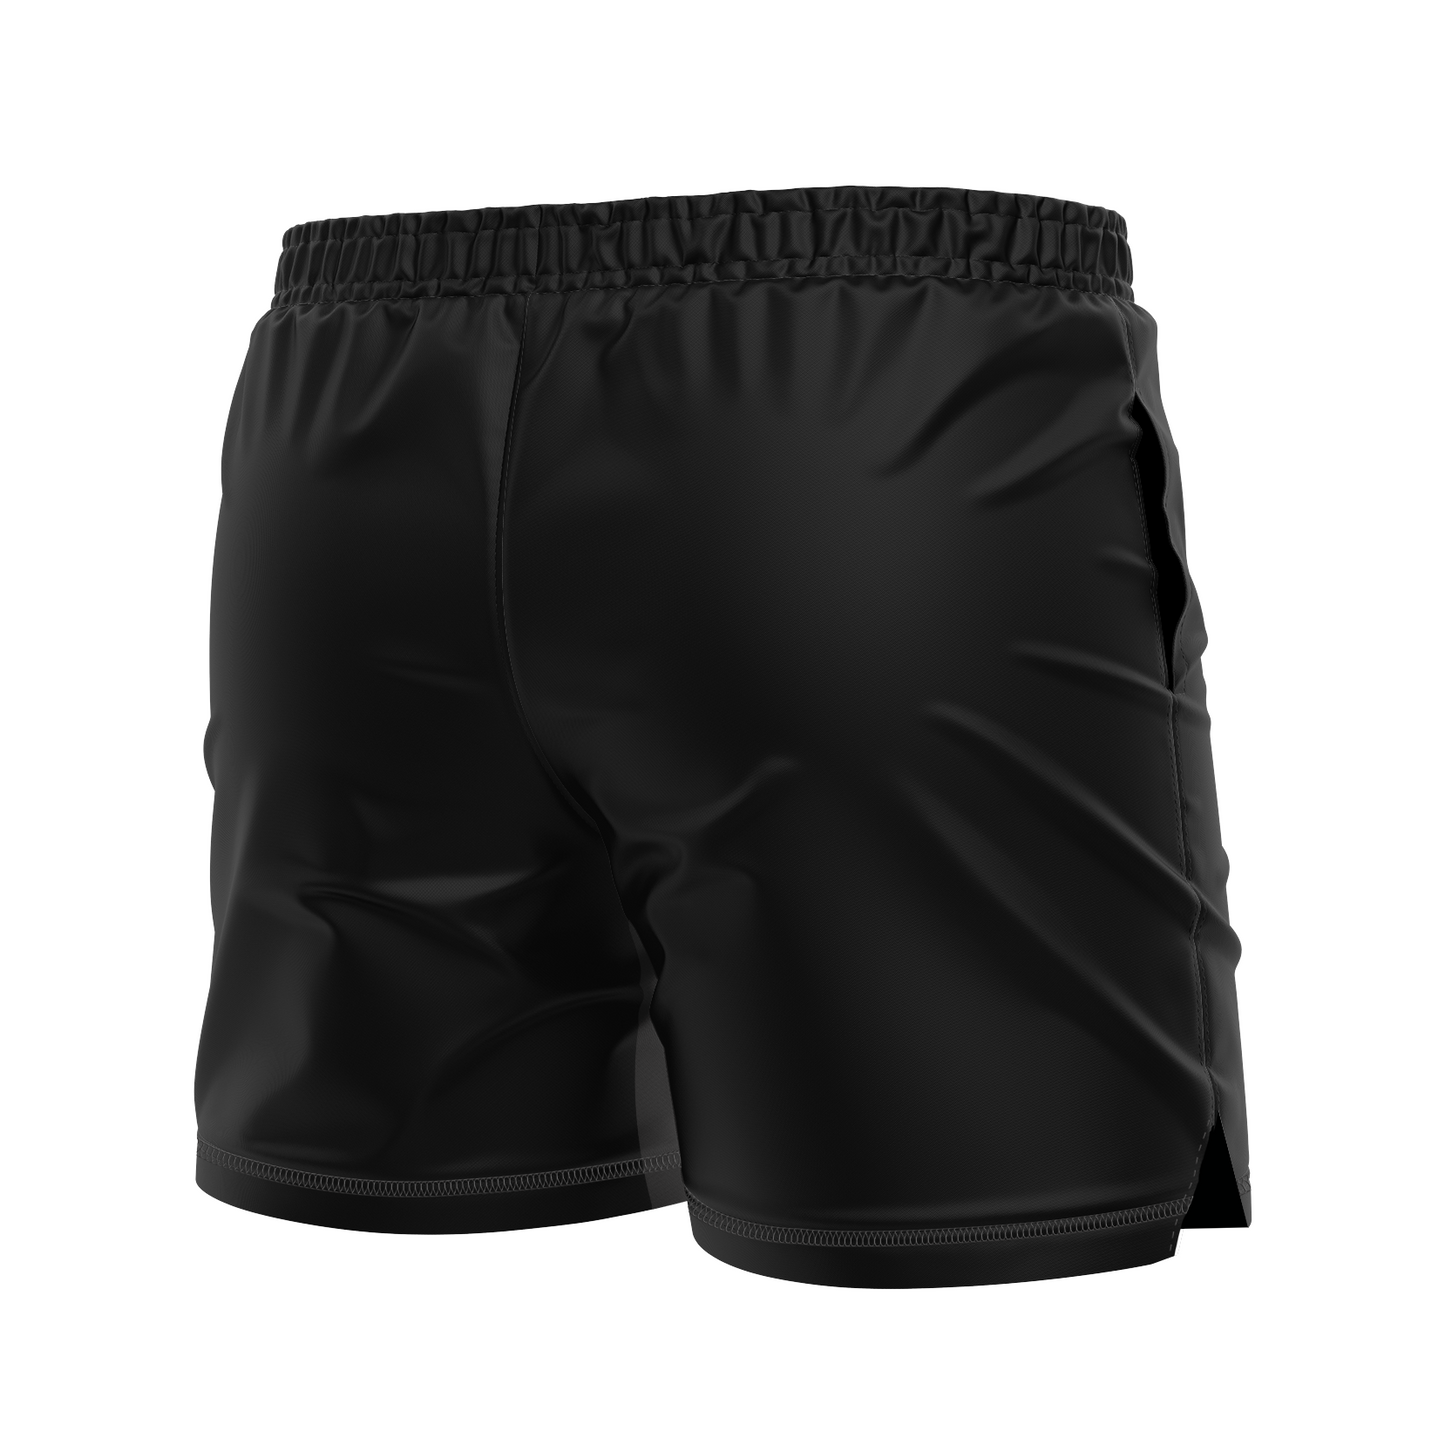 Death by Wristlock: Duck Ramen men's FC shorts, black